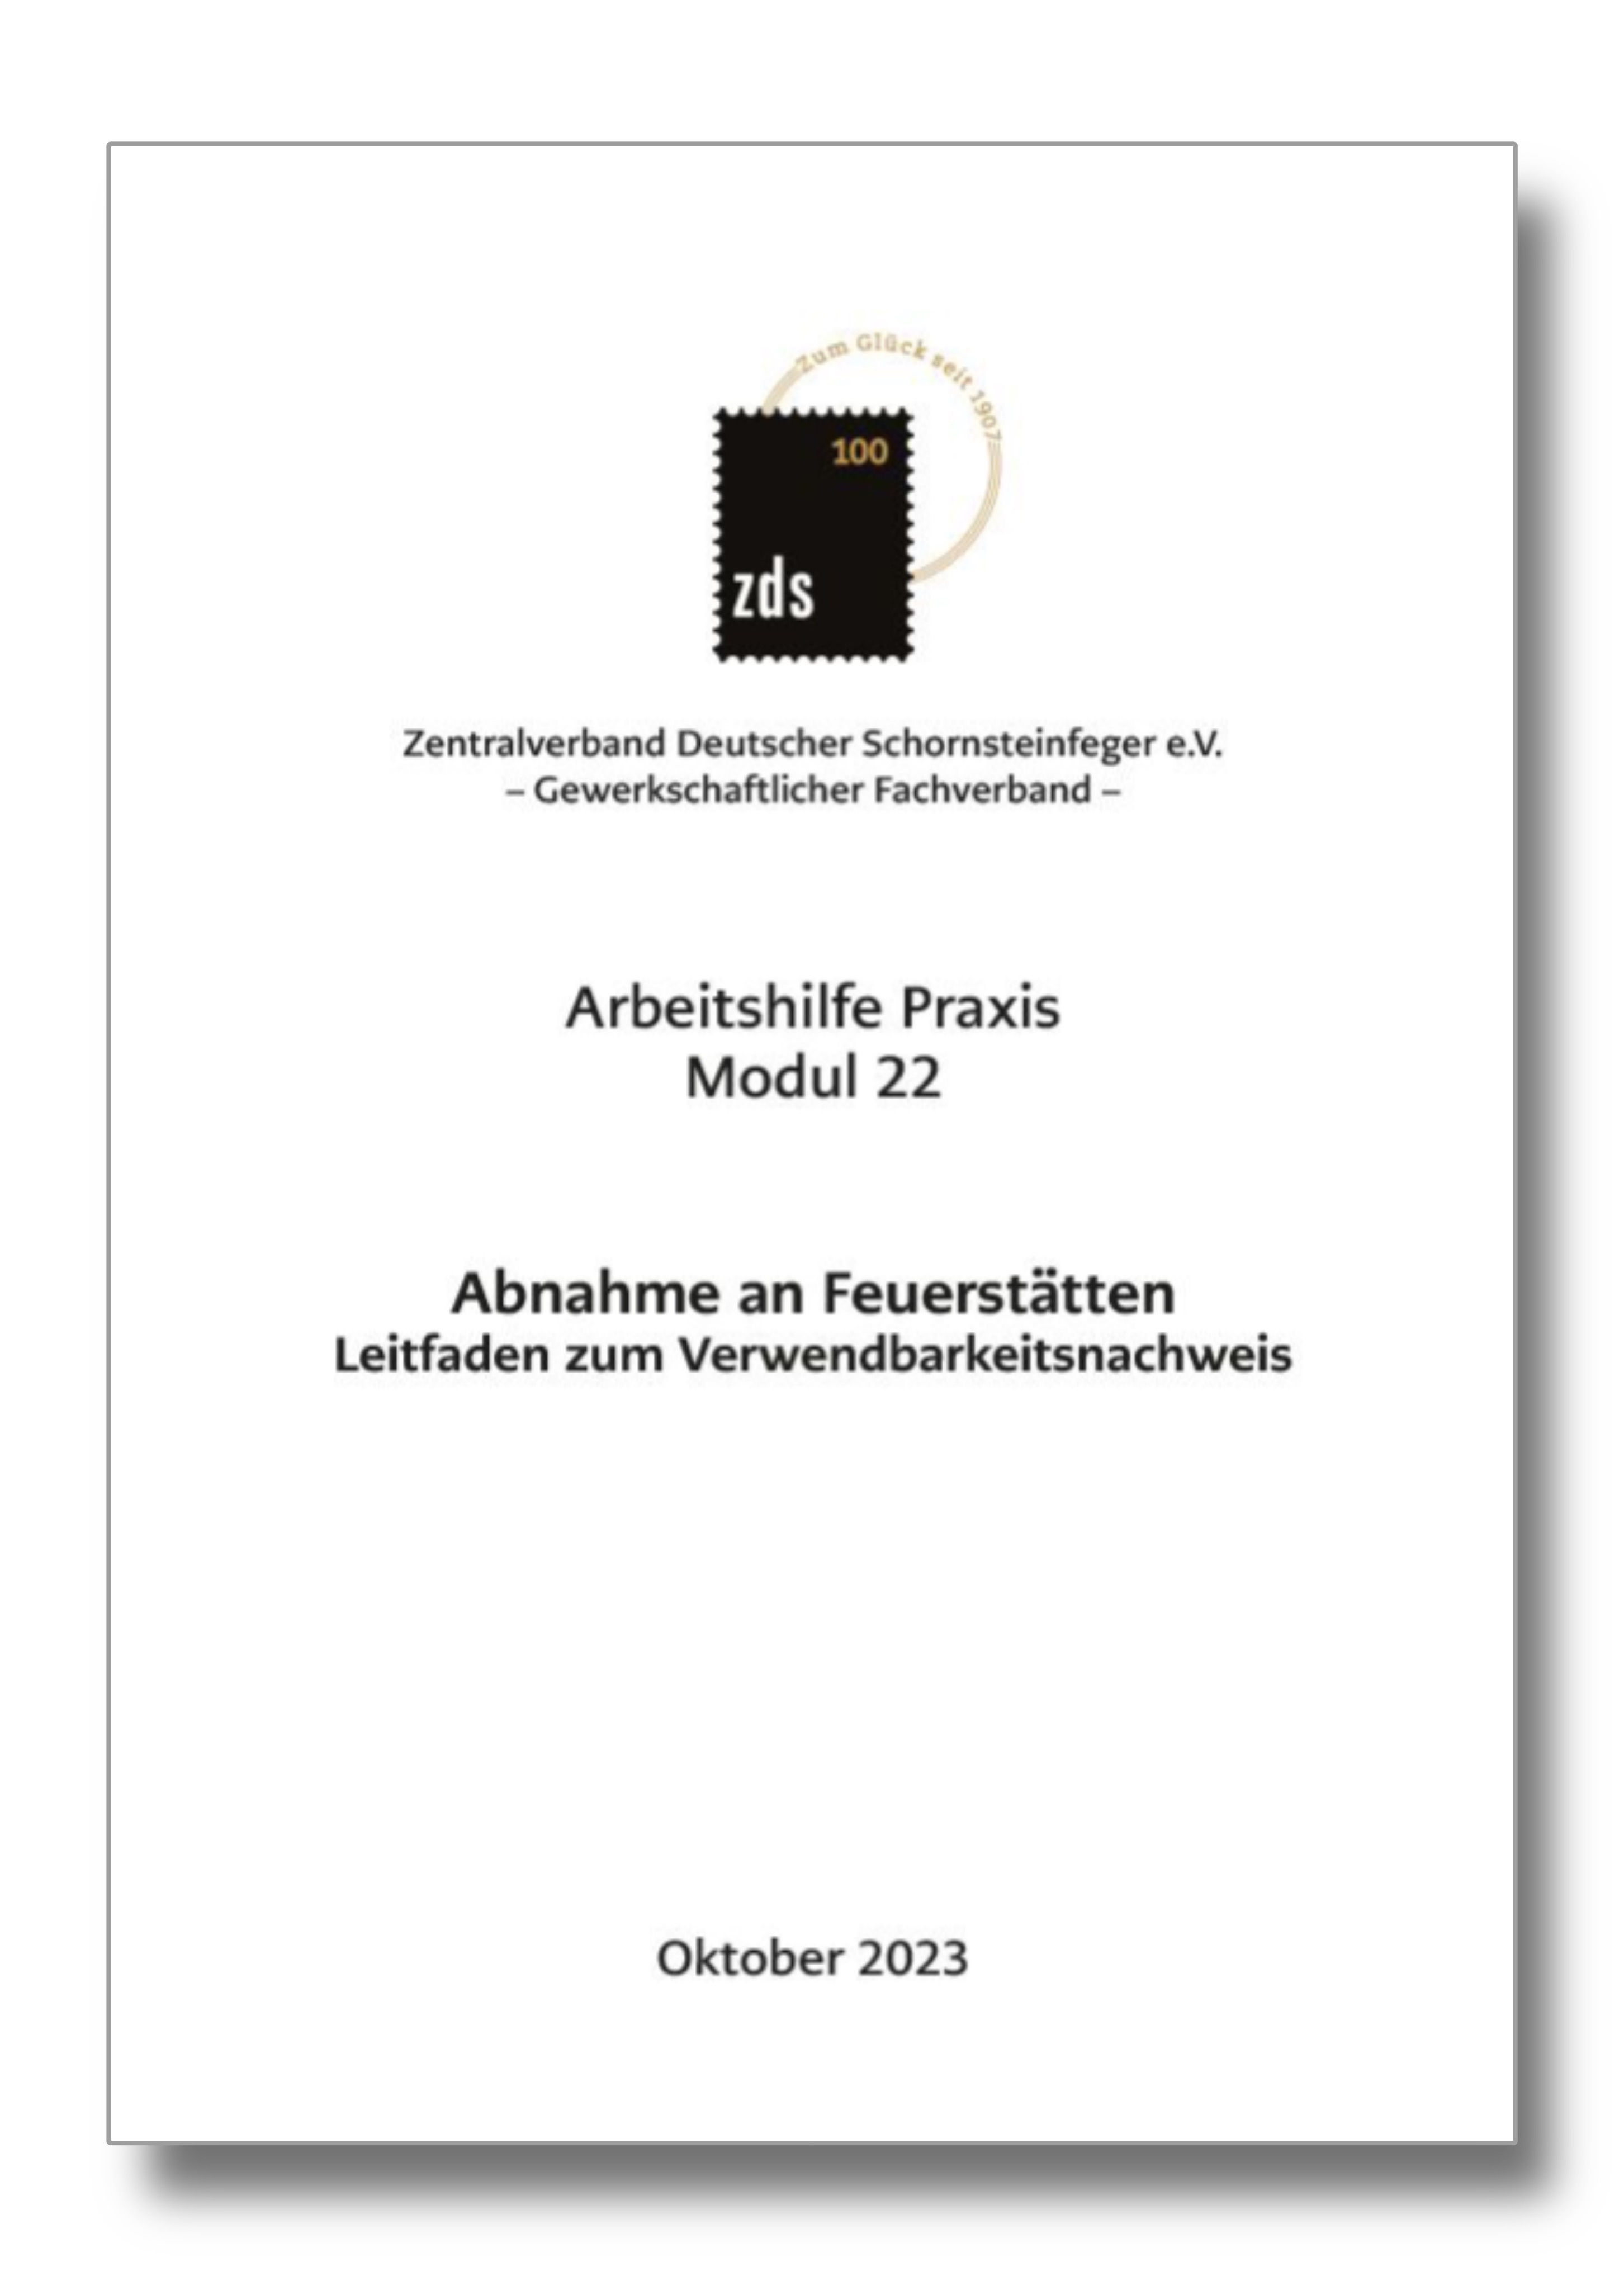 ZDS AH P Modul 22* – Abnahme an Feuerstätten - Arbeitskarte